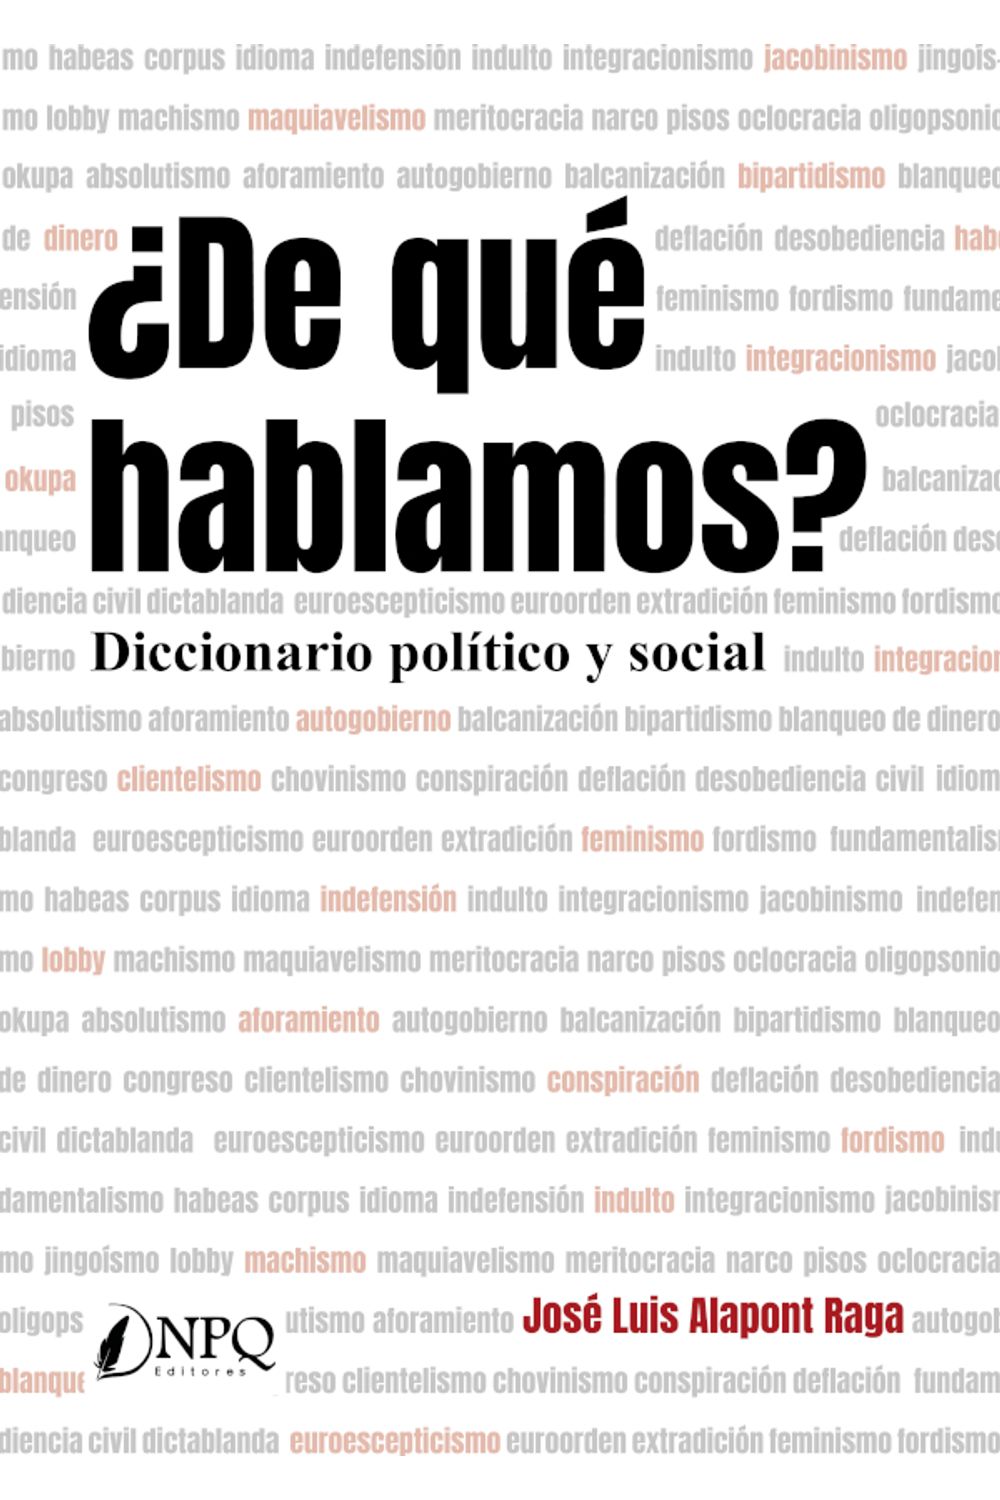 bm-de-que-hablamos-diccionario-politico-y-social-editorial-sargantana-9788418496264